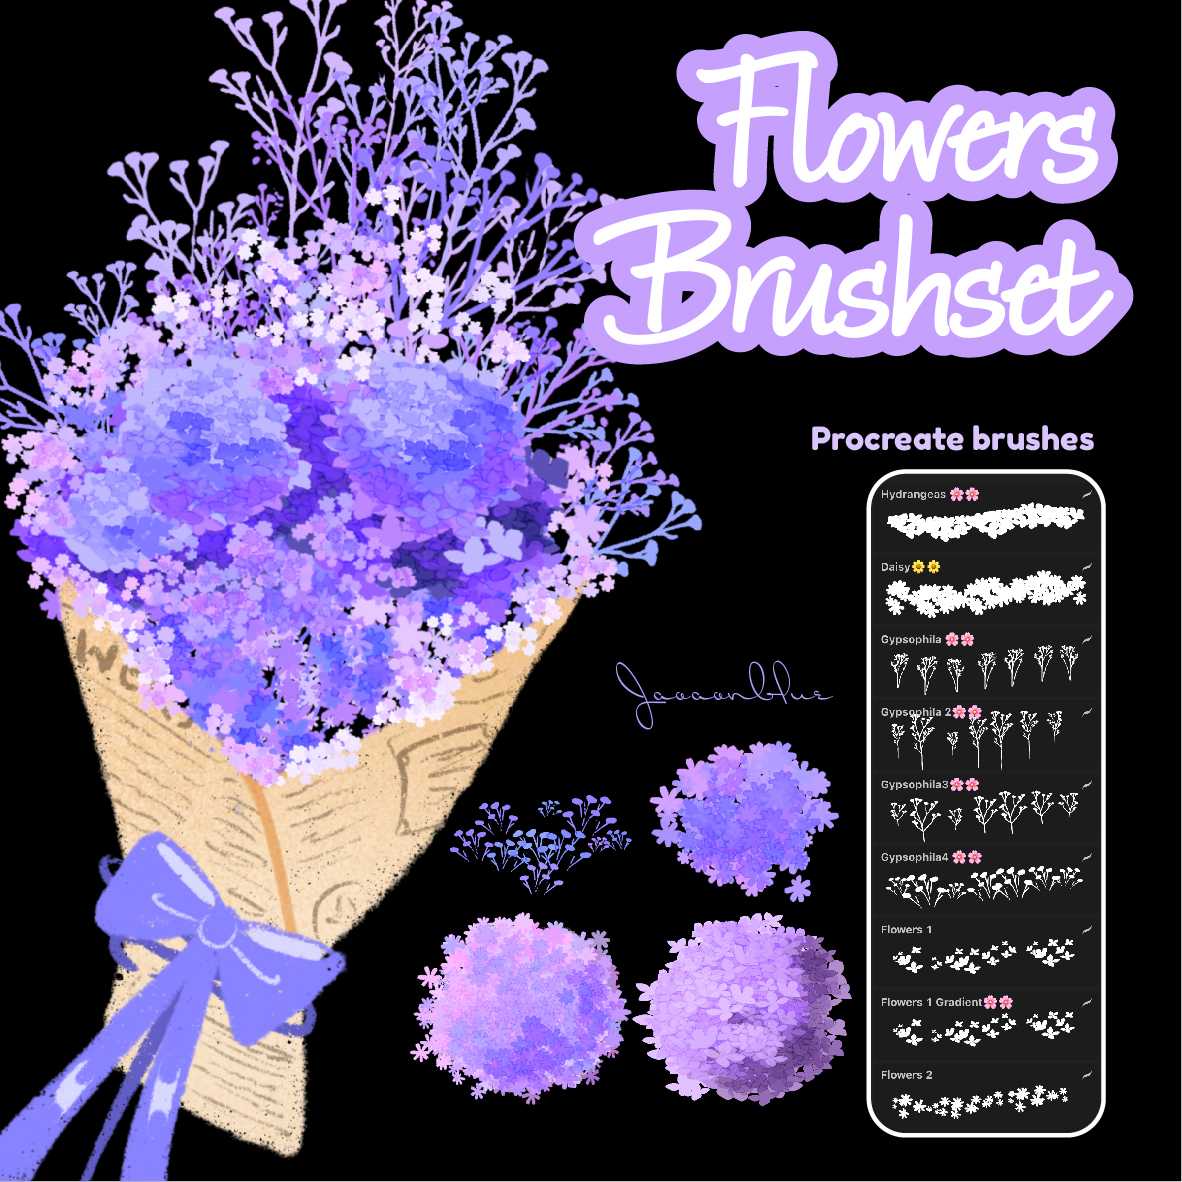 Procreate Flowers brushes